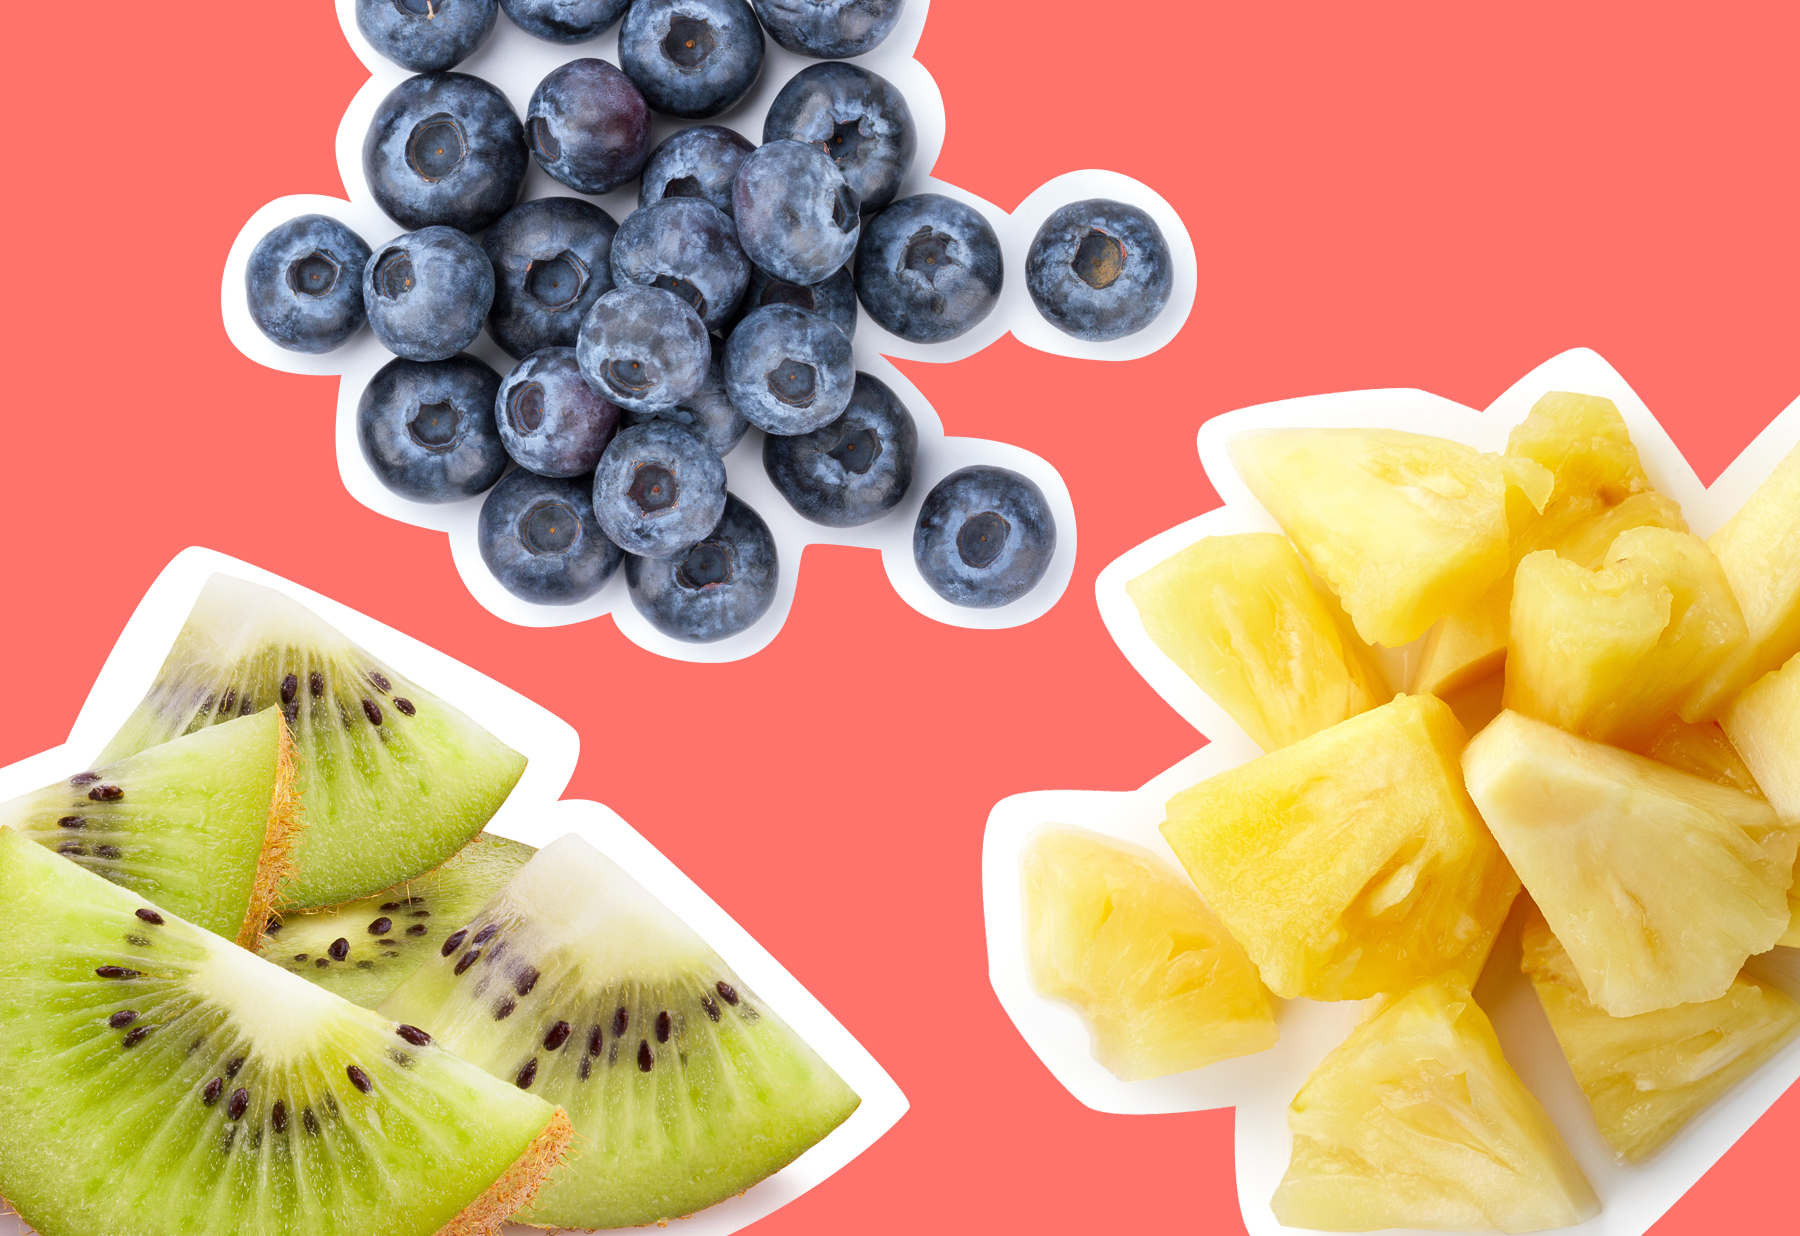 Sugar in Fruit: How Sweet Is It? | Greatist